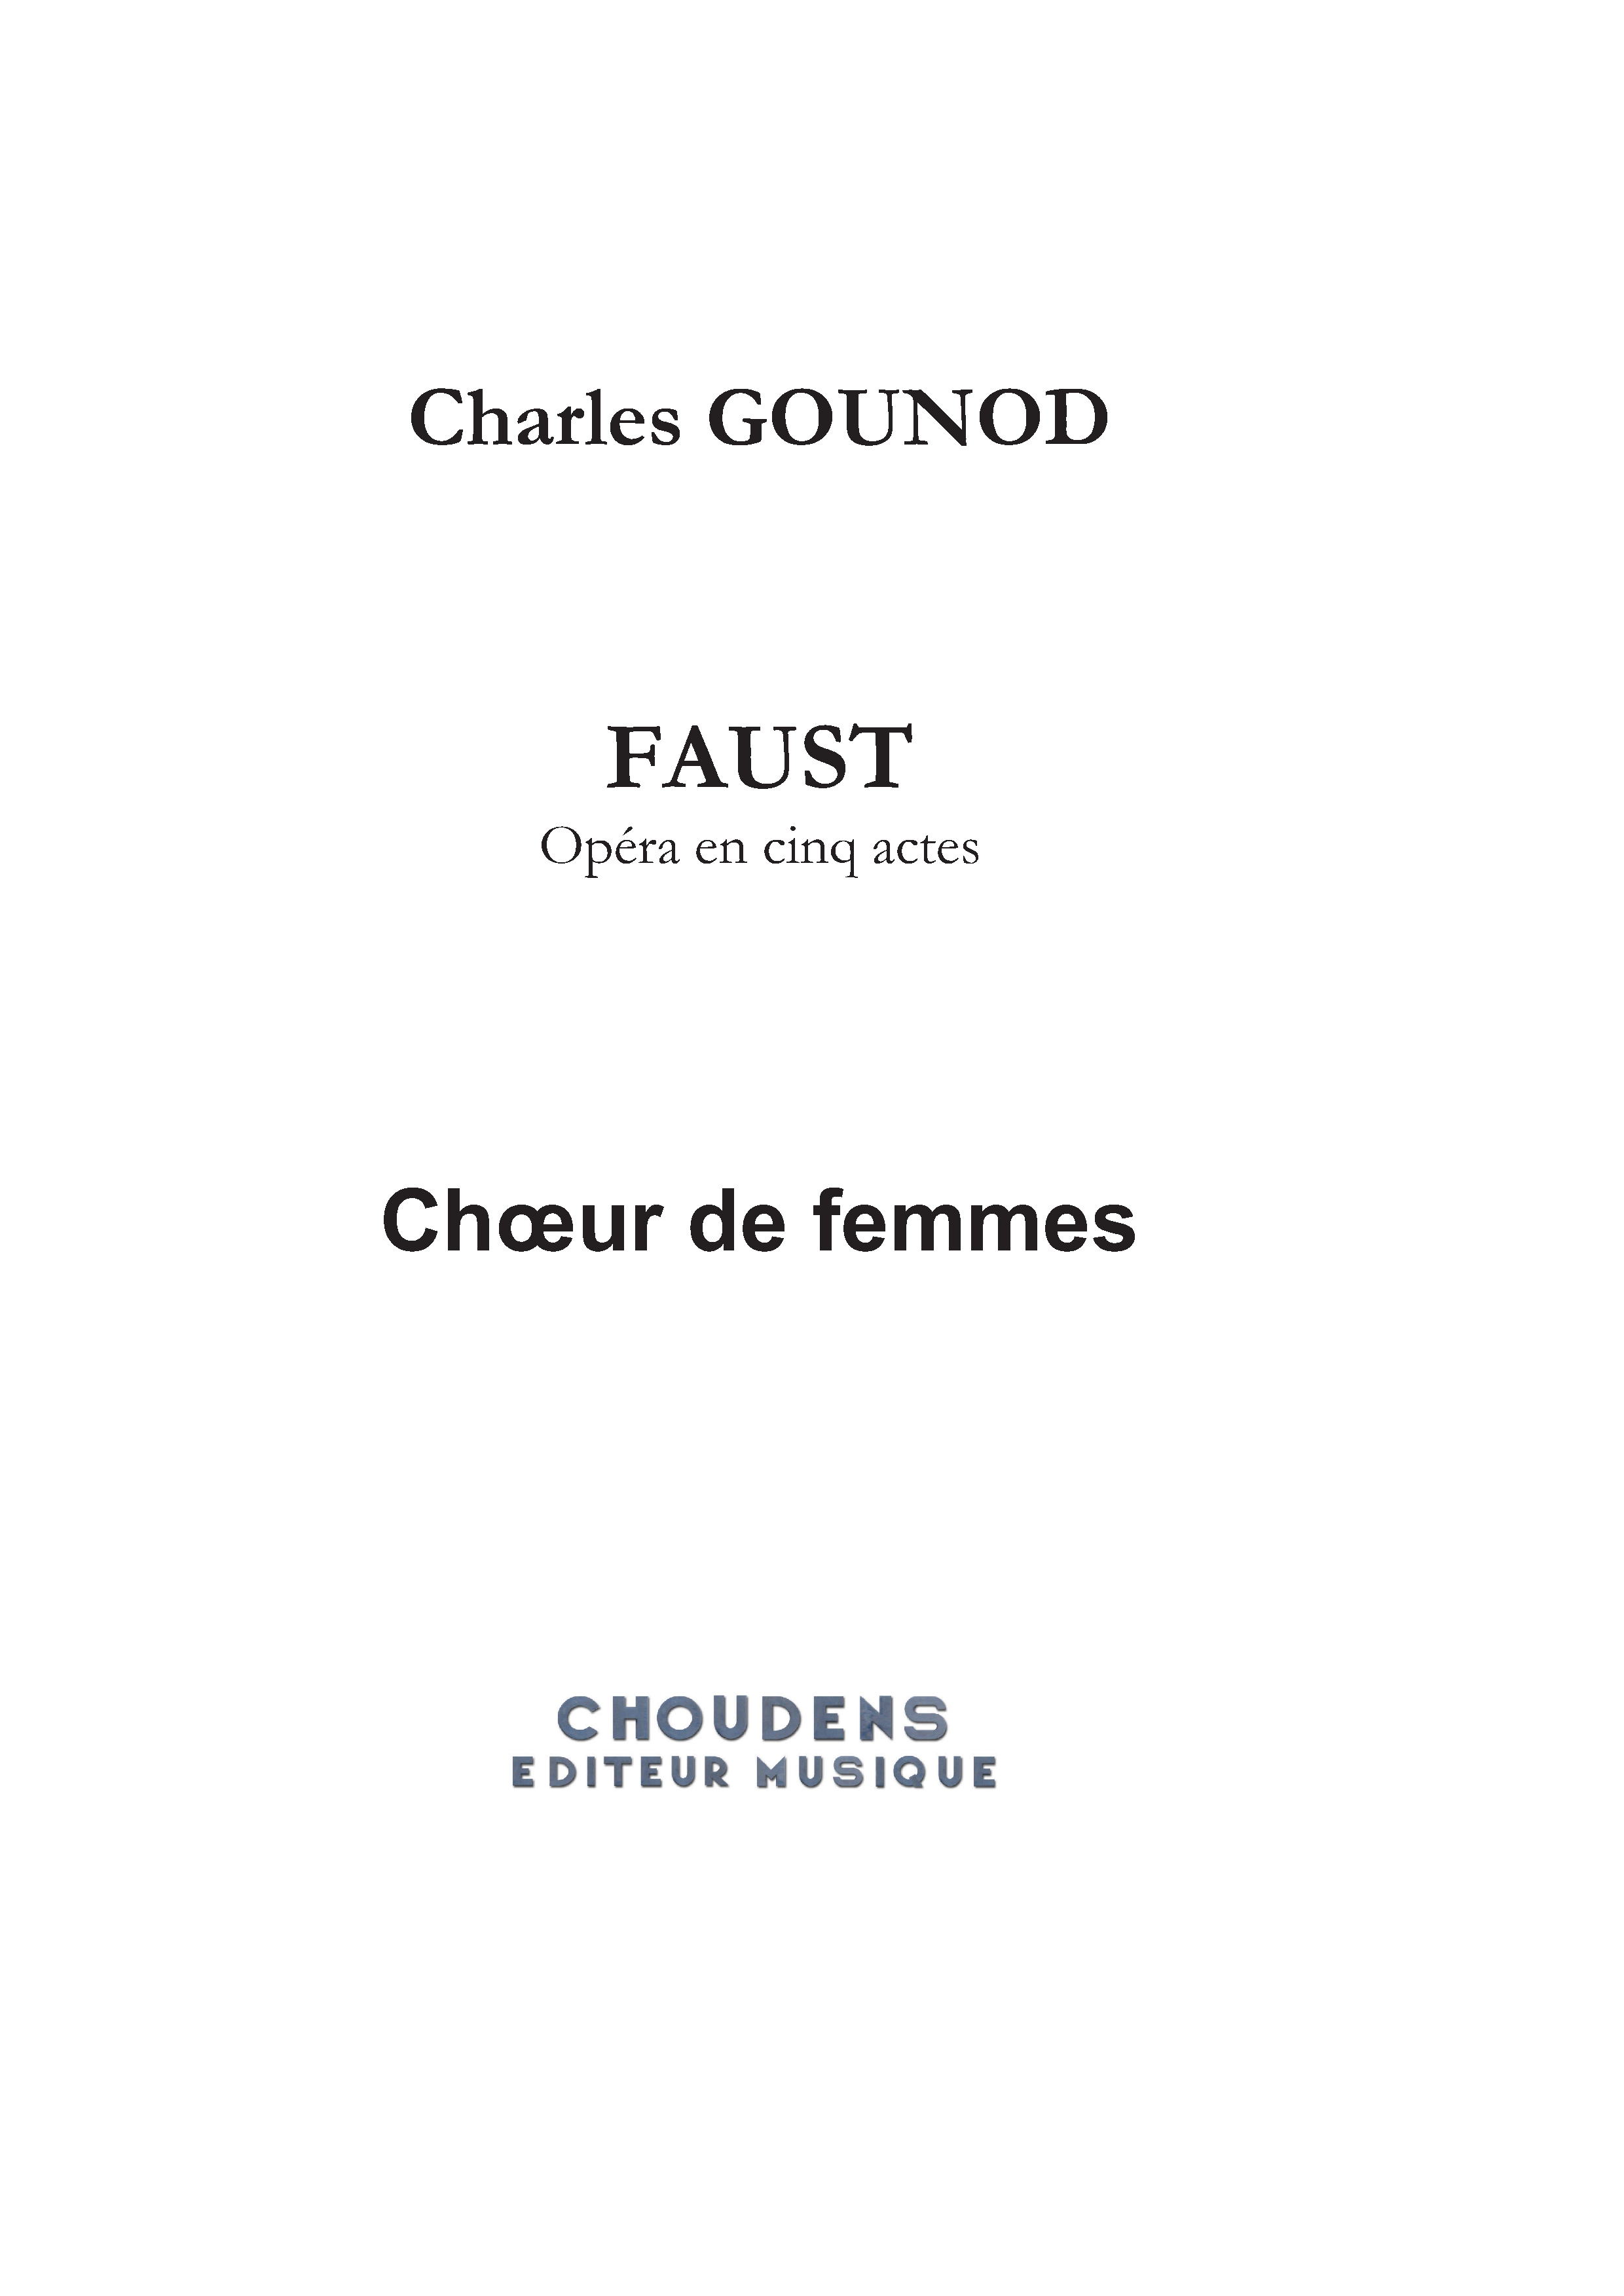 Charles Gounod: Faust - Opéra en cinq actes: Voice: Part